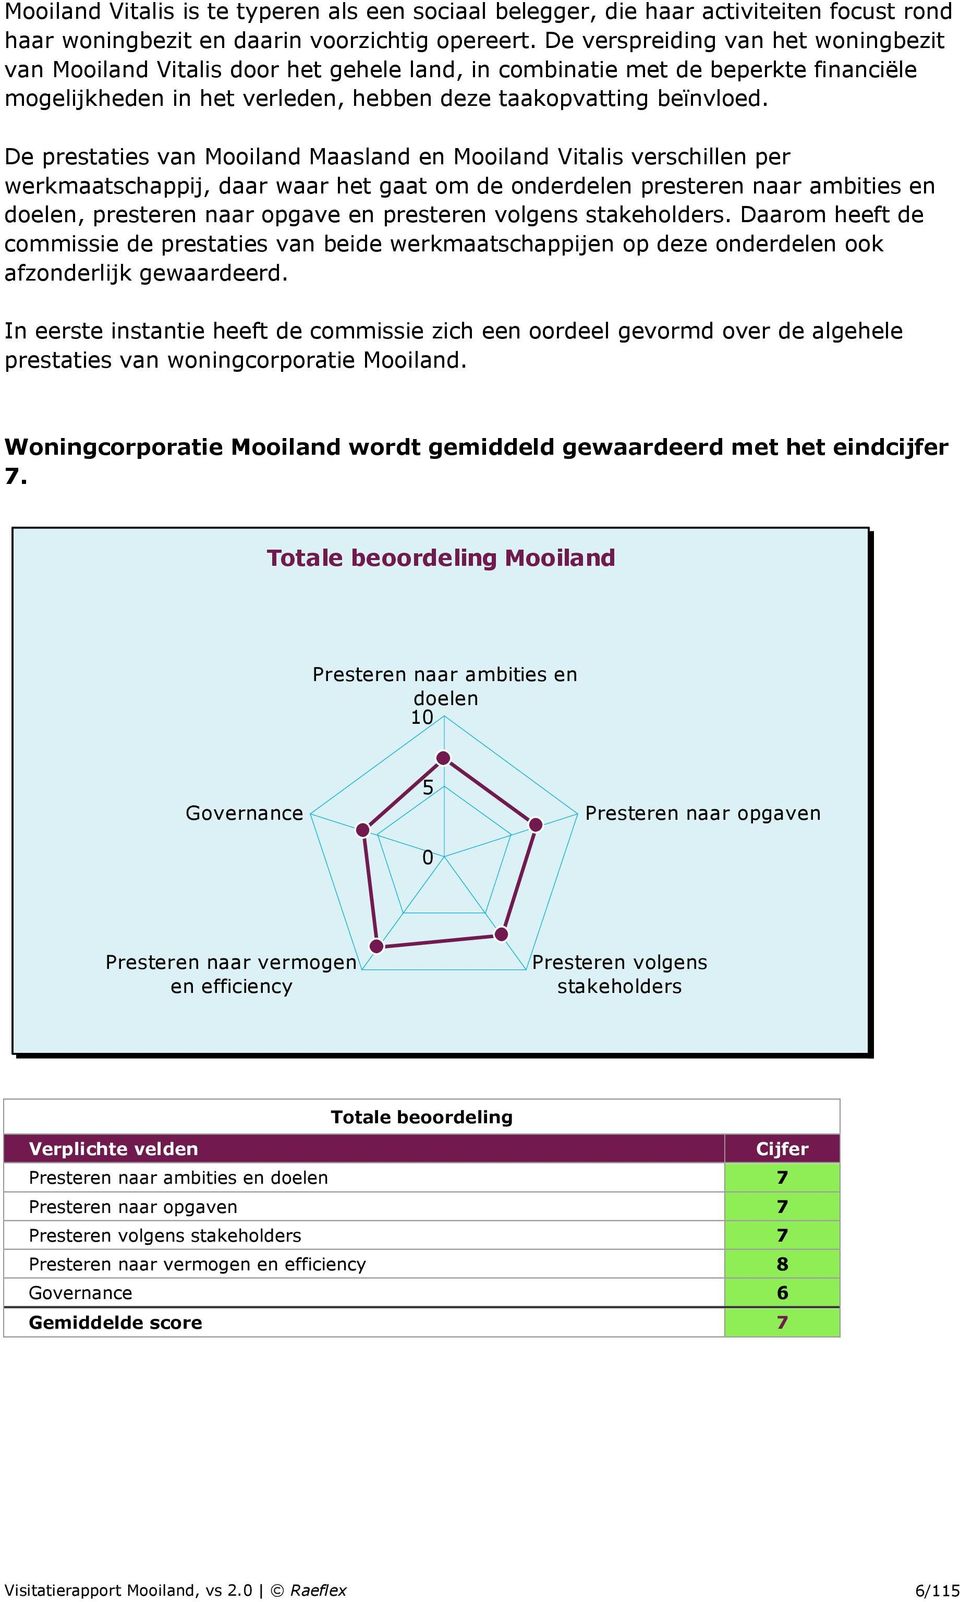 De prestaties van Mooiland Maasland en Mooiland Vitalis verschillen per werkmaatschappij, daar waar het gaat om de onderdelen presteren naar ambities en doelen, presteren naar opgave en presteren